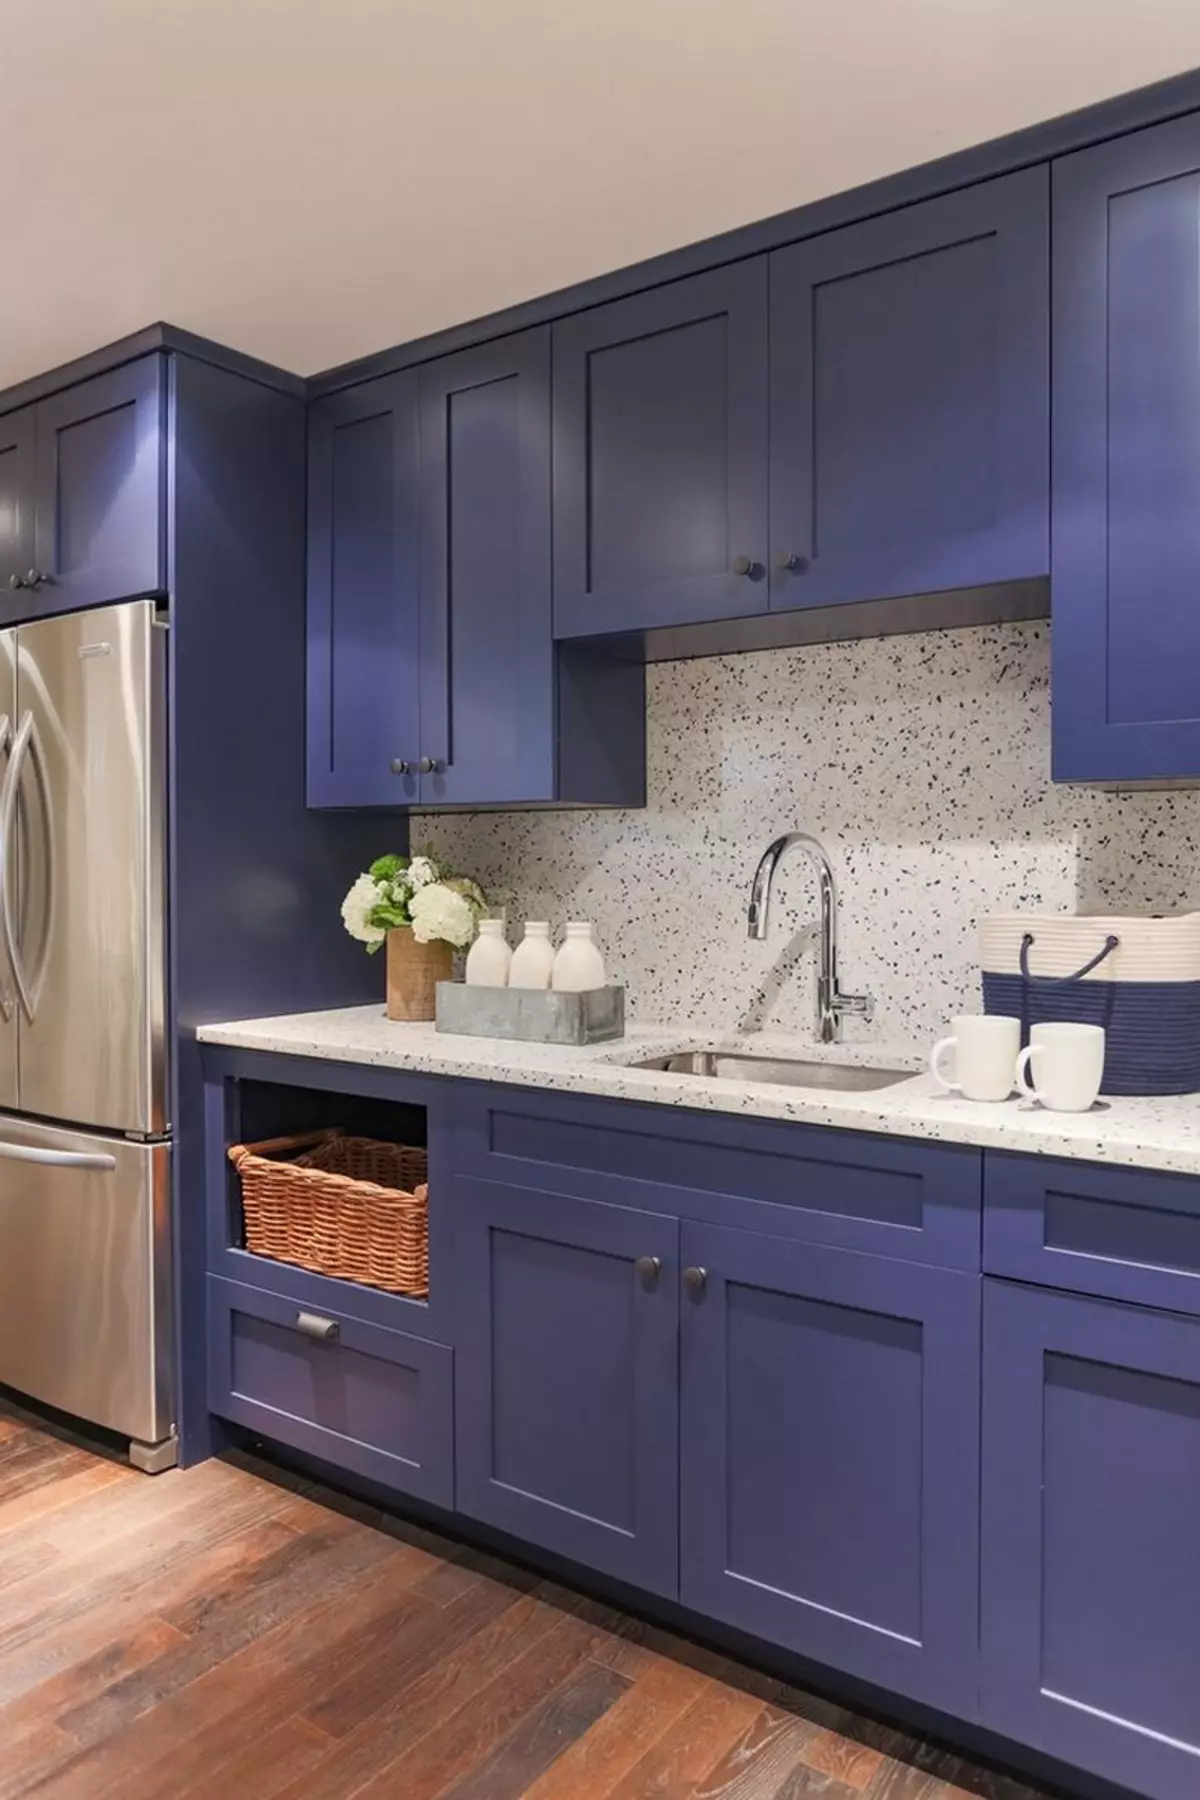 Blaue Küche (82 Fotos): Welche Farben werden im Inneren eines blauen Küchensatzes kombiniert? Küchenentwurf in hellblauen und dunkelblauen Tönen 9555_11